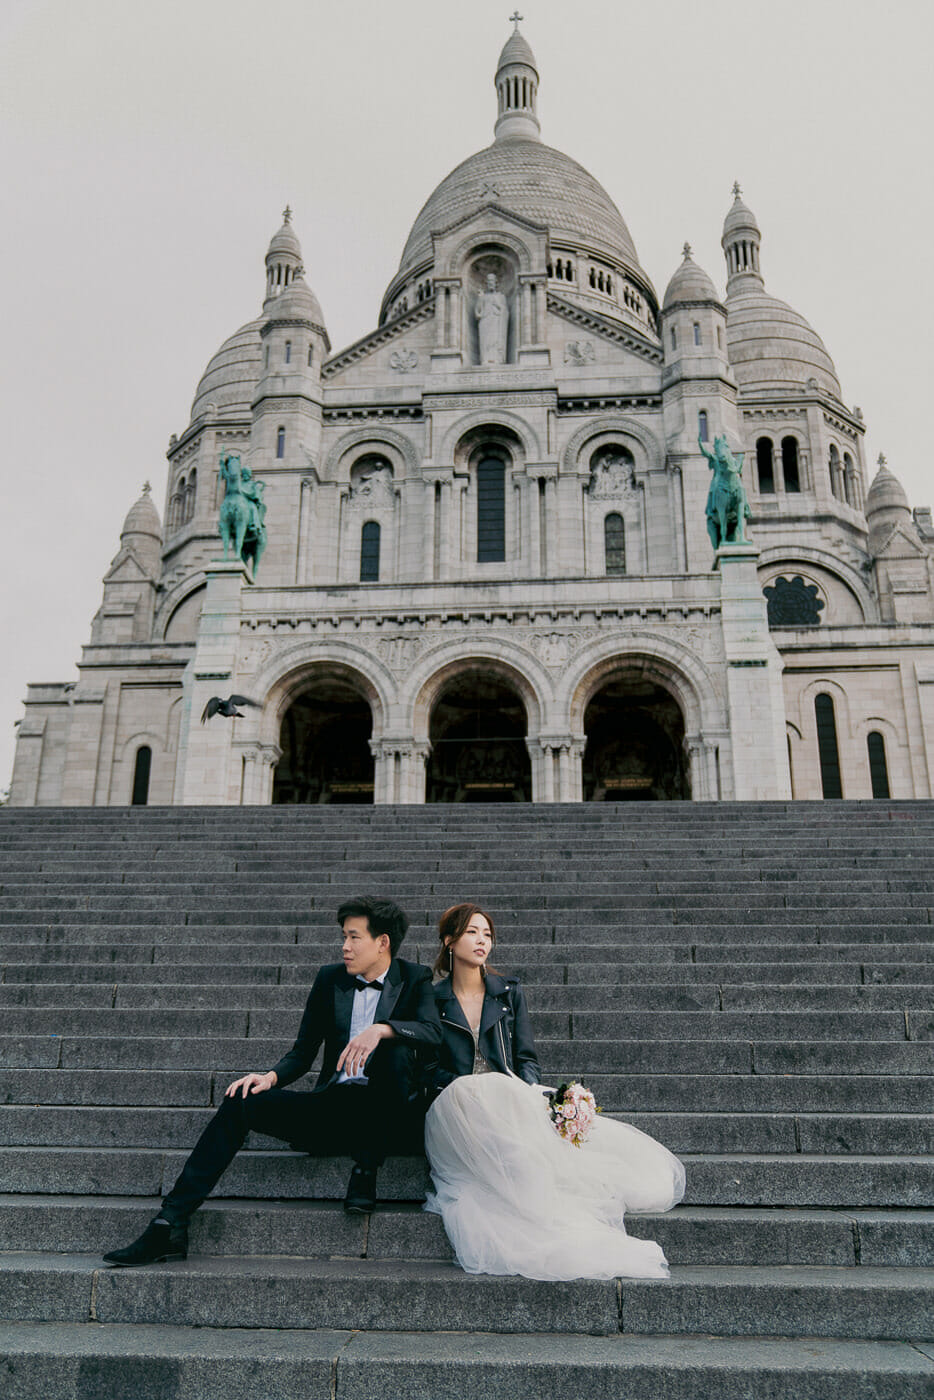 Stylish Paris pre-wedding photos at Montmartre below Sacre Coeur at sunrise